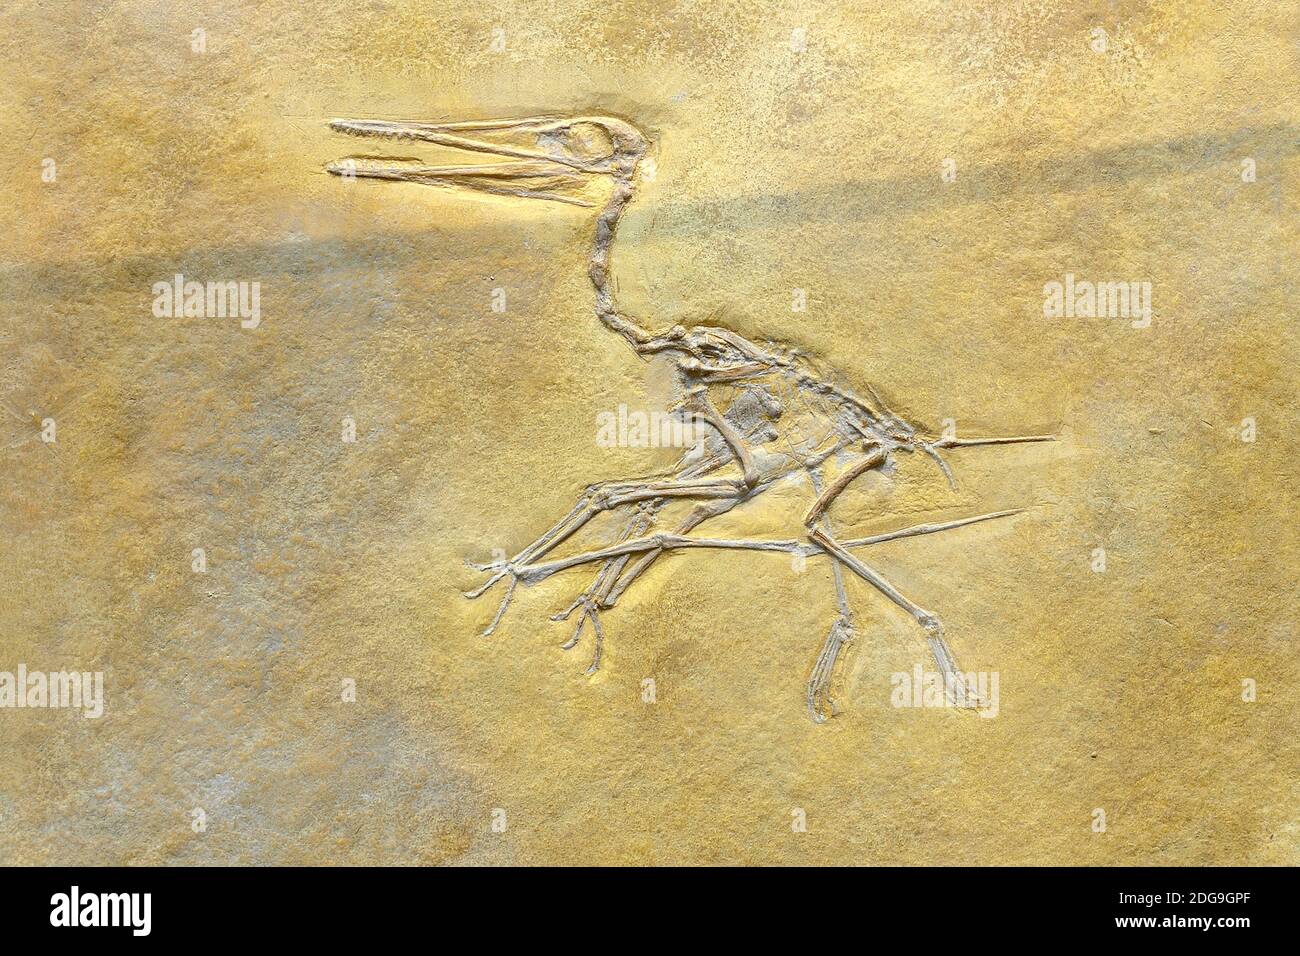 Versteinerung eines kurzschwänziger Flugsaurier (Pterodactylus kochi), Museum für Naturkunde, Naturkundemuseum Berlin Stock Photo